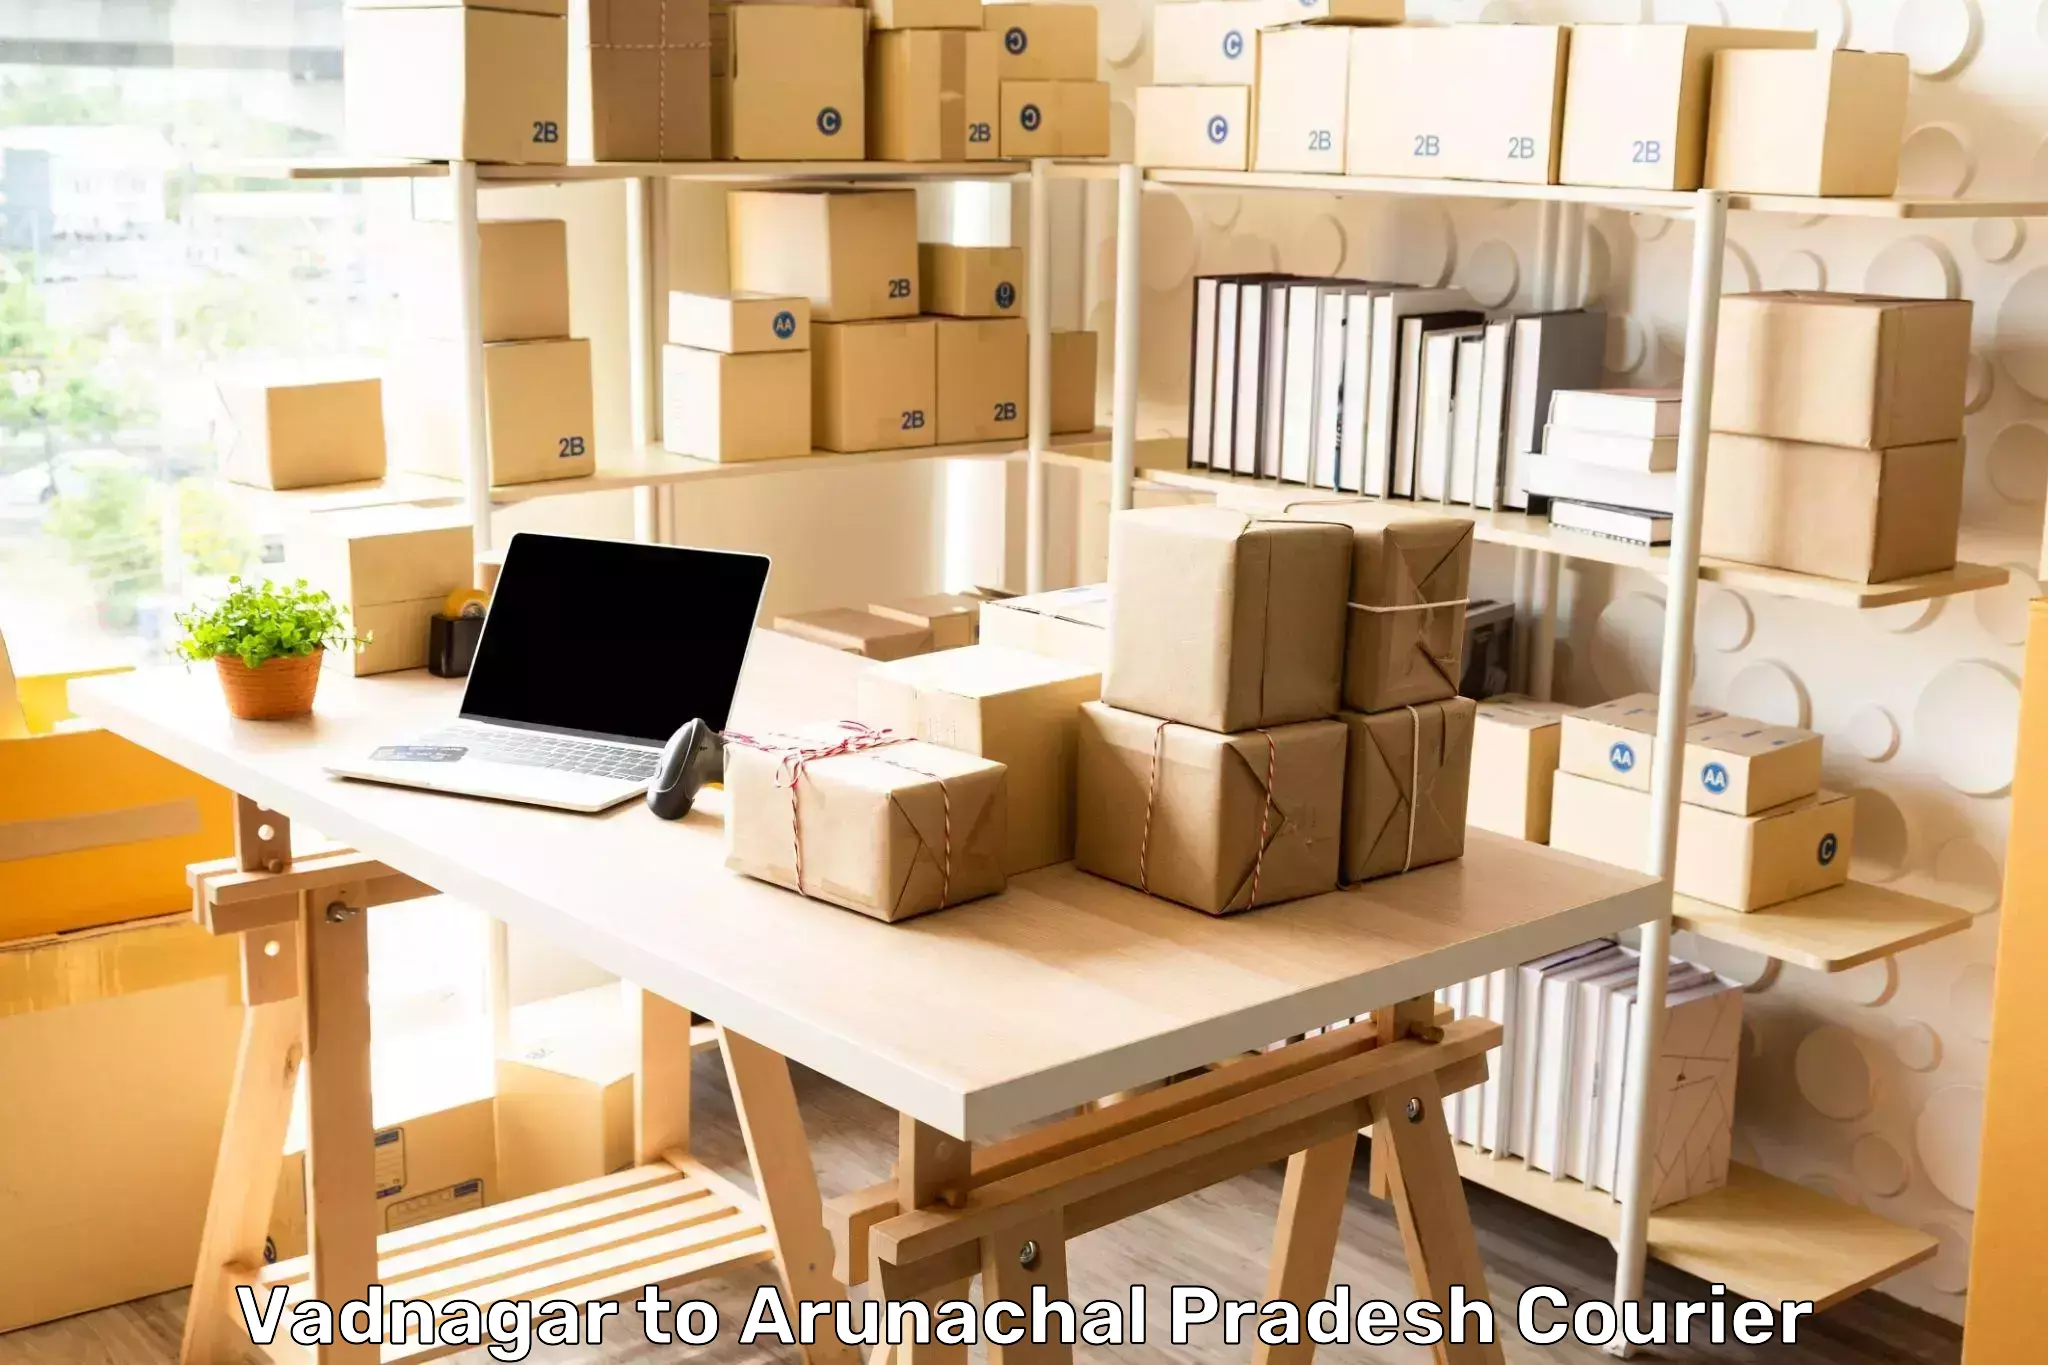 Premium courier solutions Vadnagar to Arunachal Pradesh